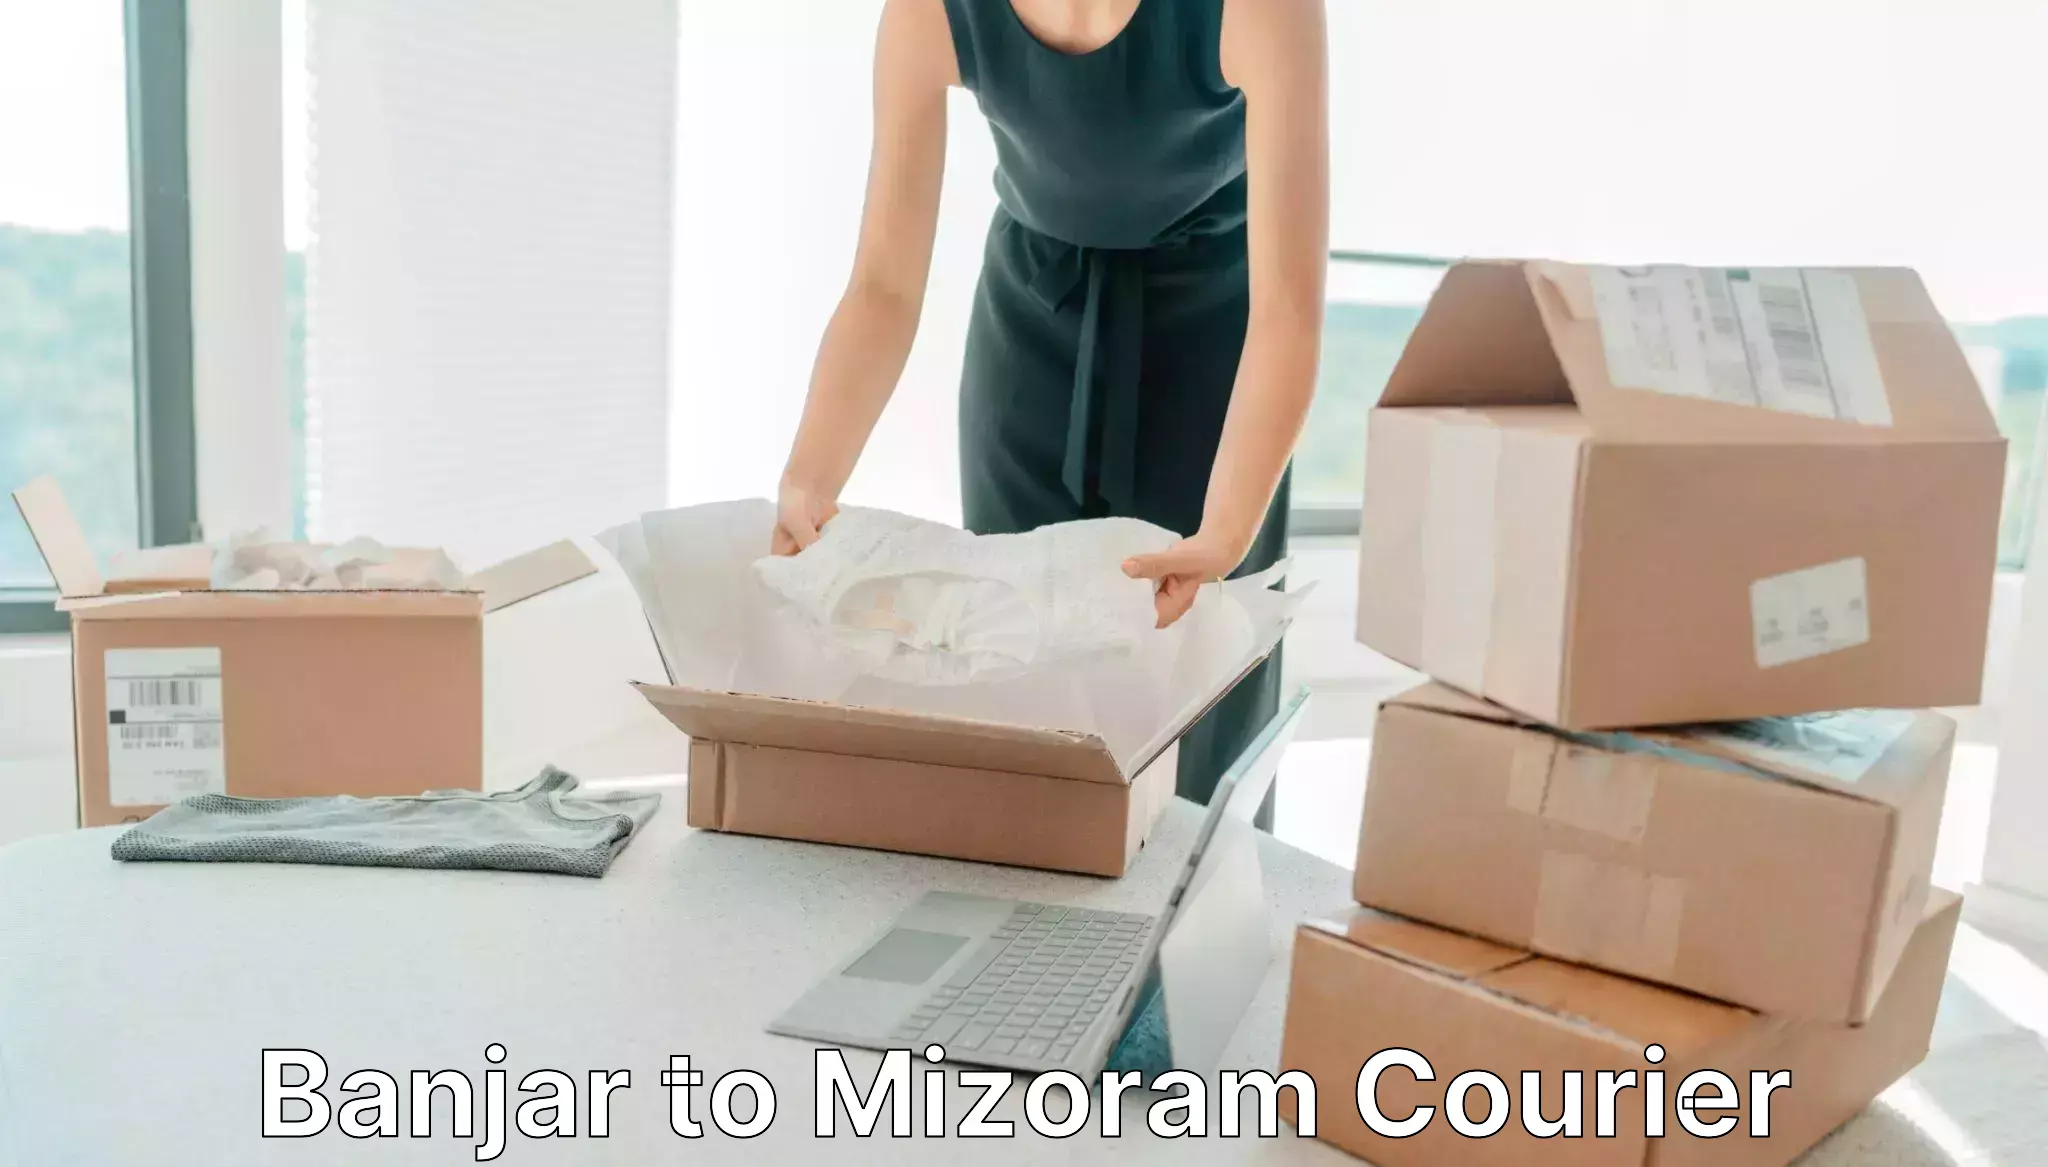 Efficient freight service Banjar to Mizoram